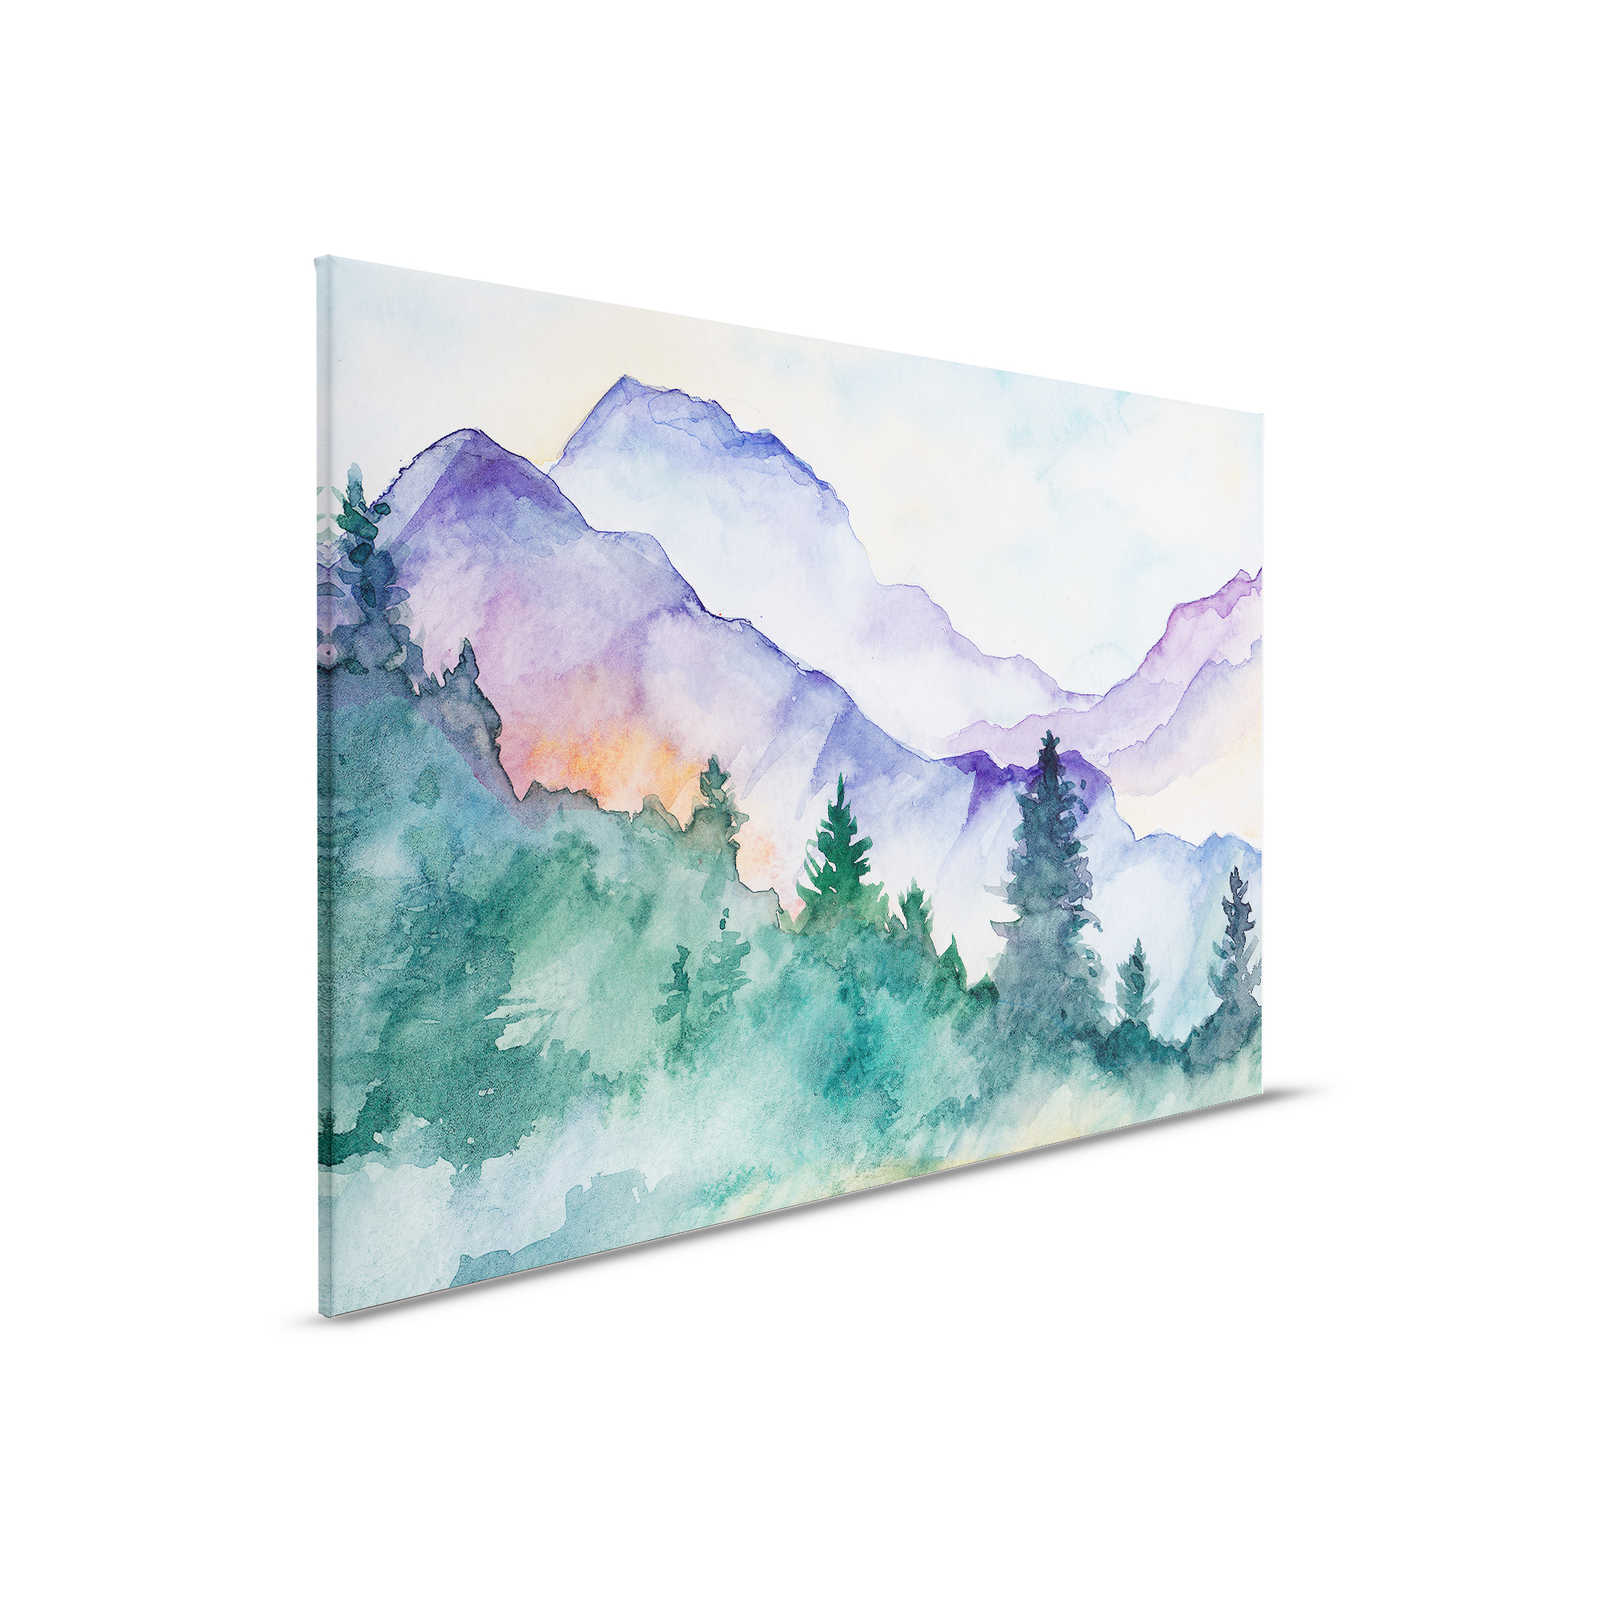 Leinwandbild mit Wasserfarben gemalte Berglandschaft – 0,90 m x 0,60 m
